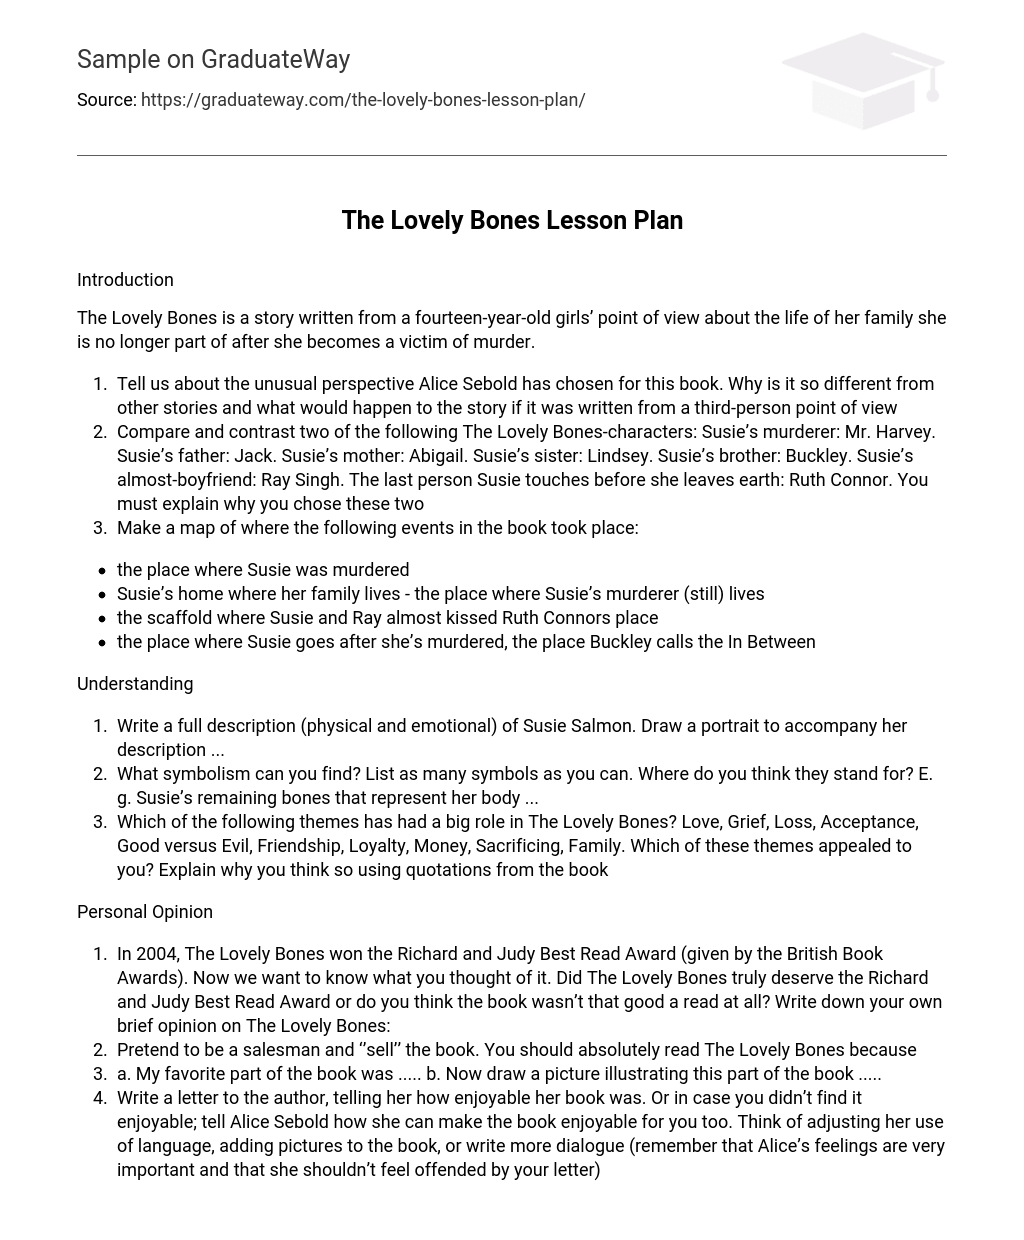 The Lovely Bones Lesson Plan